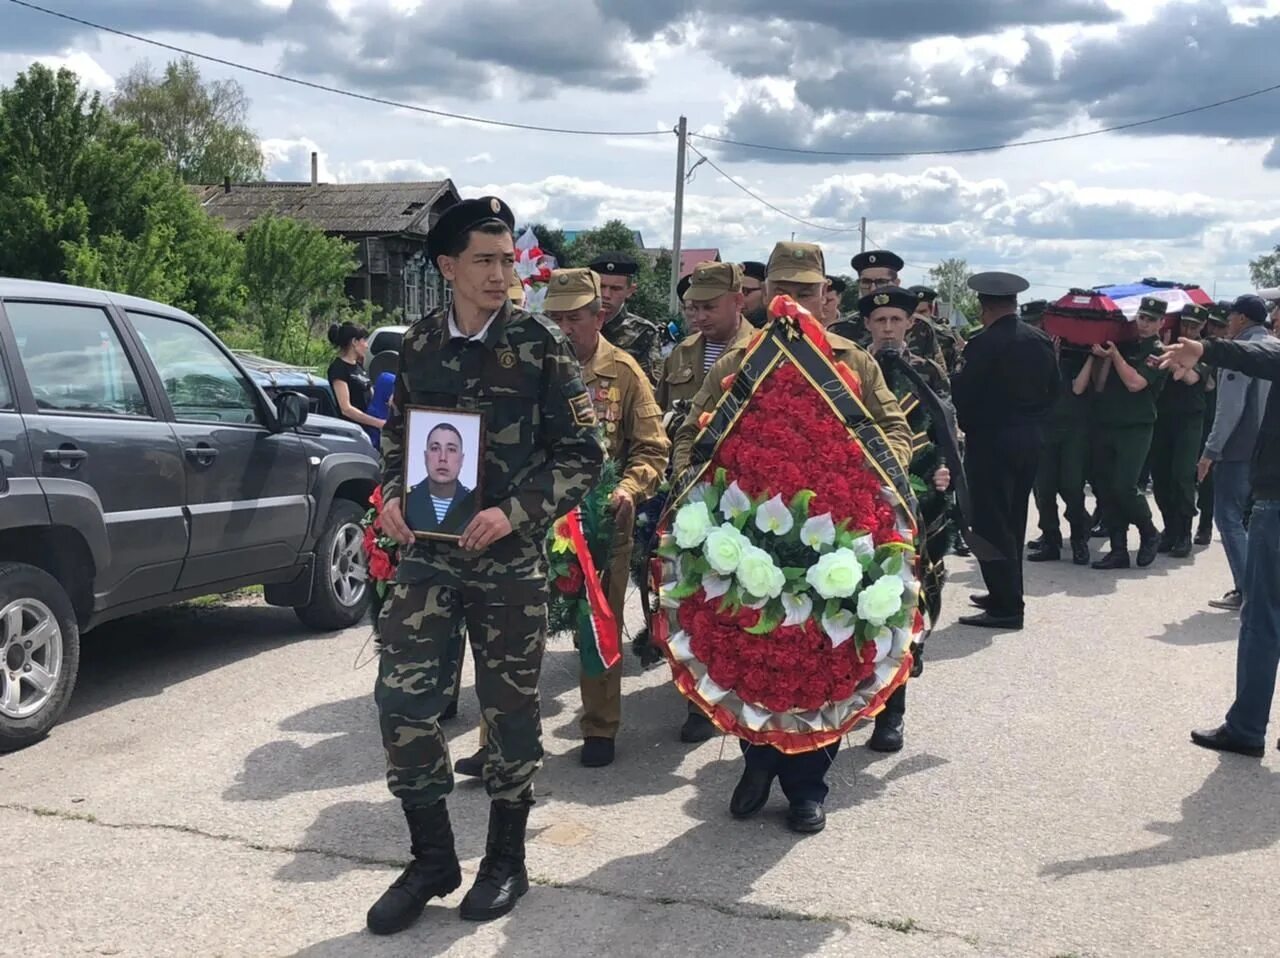 Похороны военнослужащего. Похороны солдат погибших в Украине.